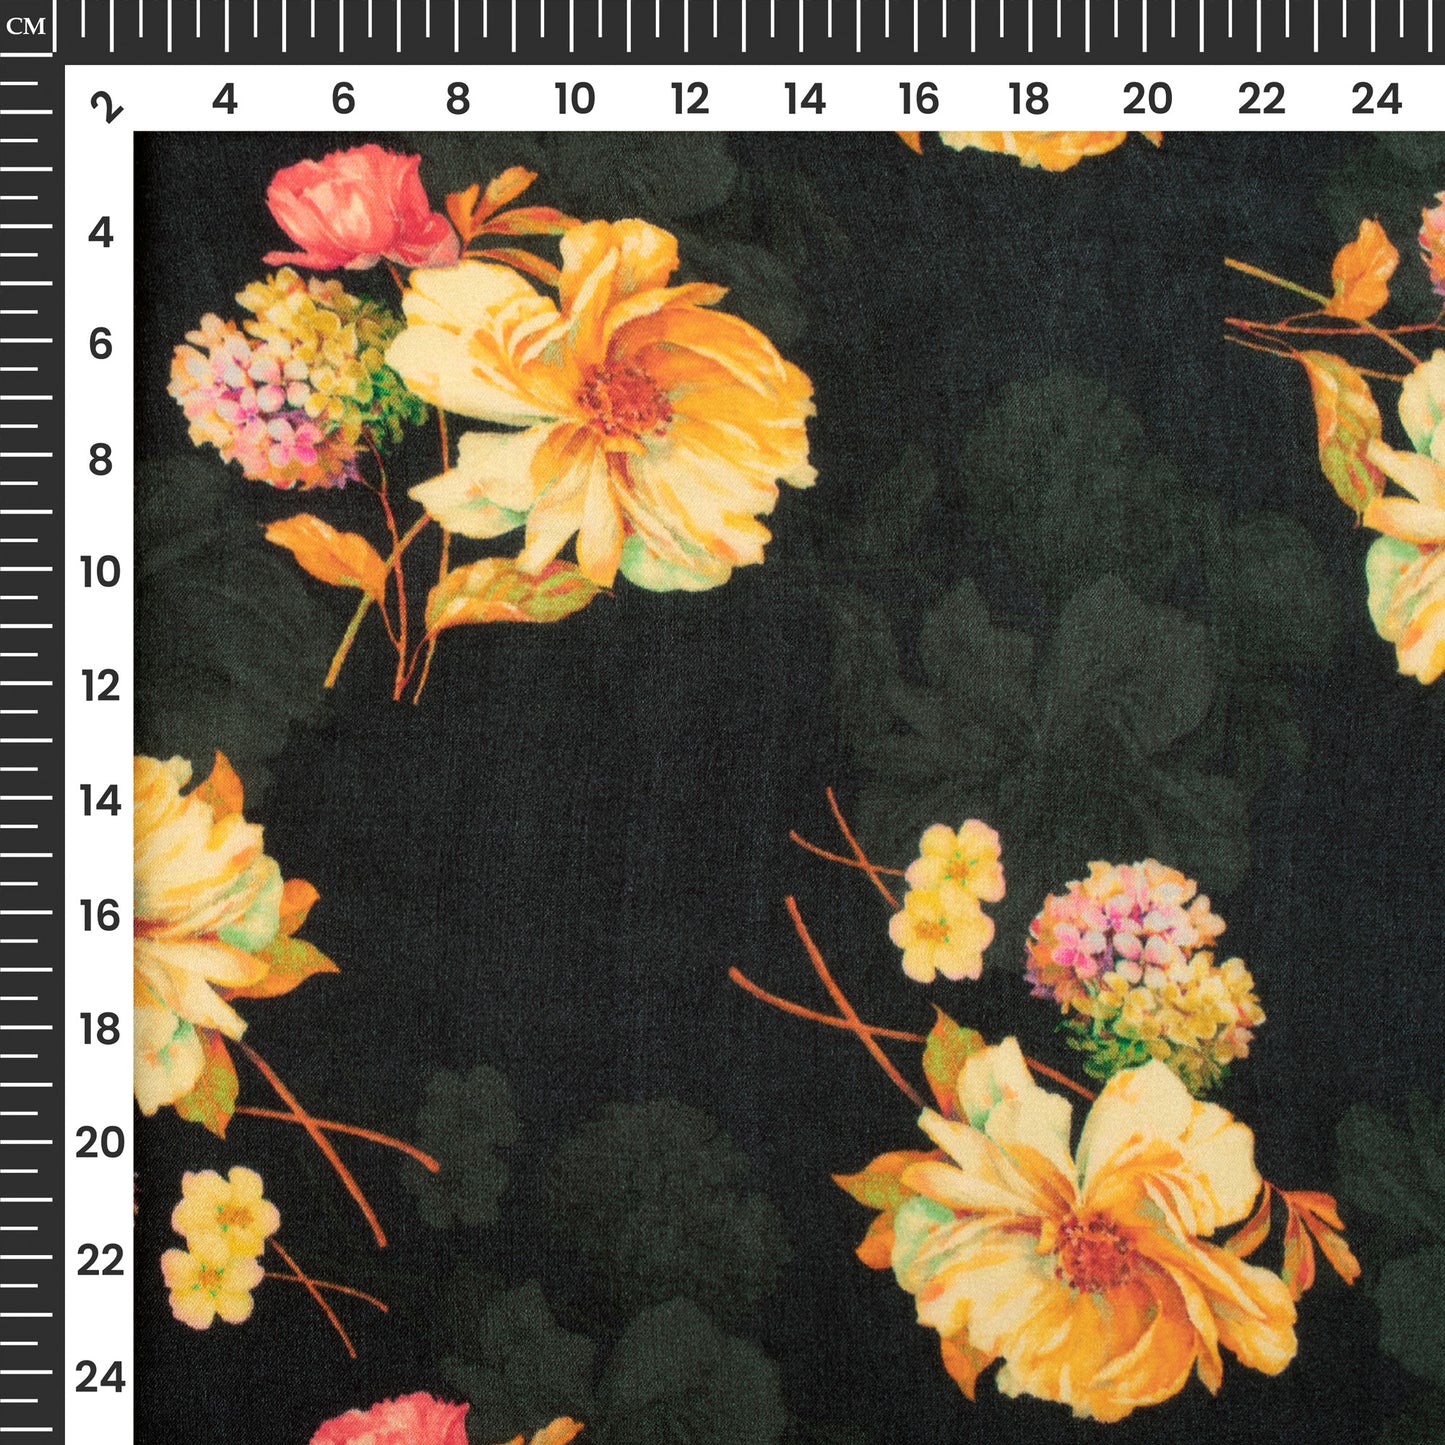 Jet Black Floral Digital Print Viscose Gaji Silk Fabric